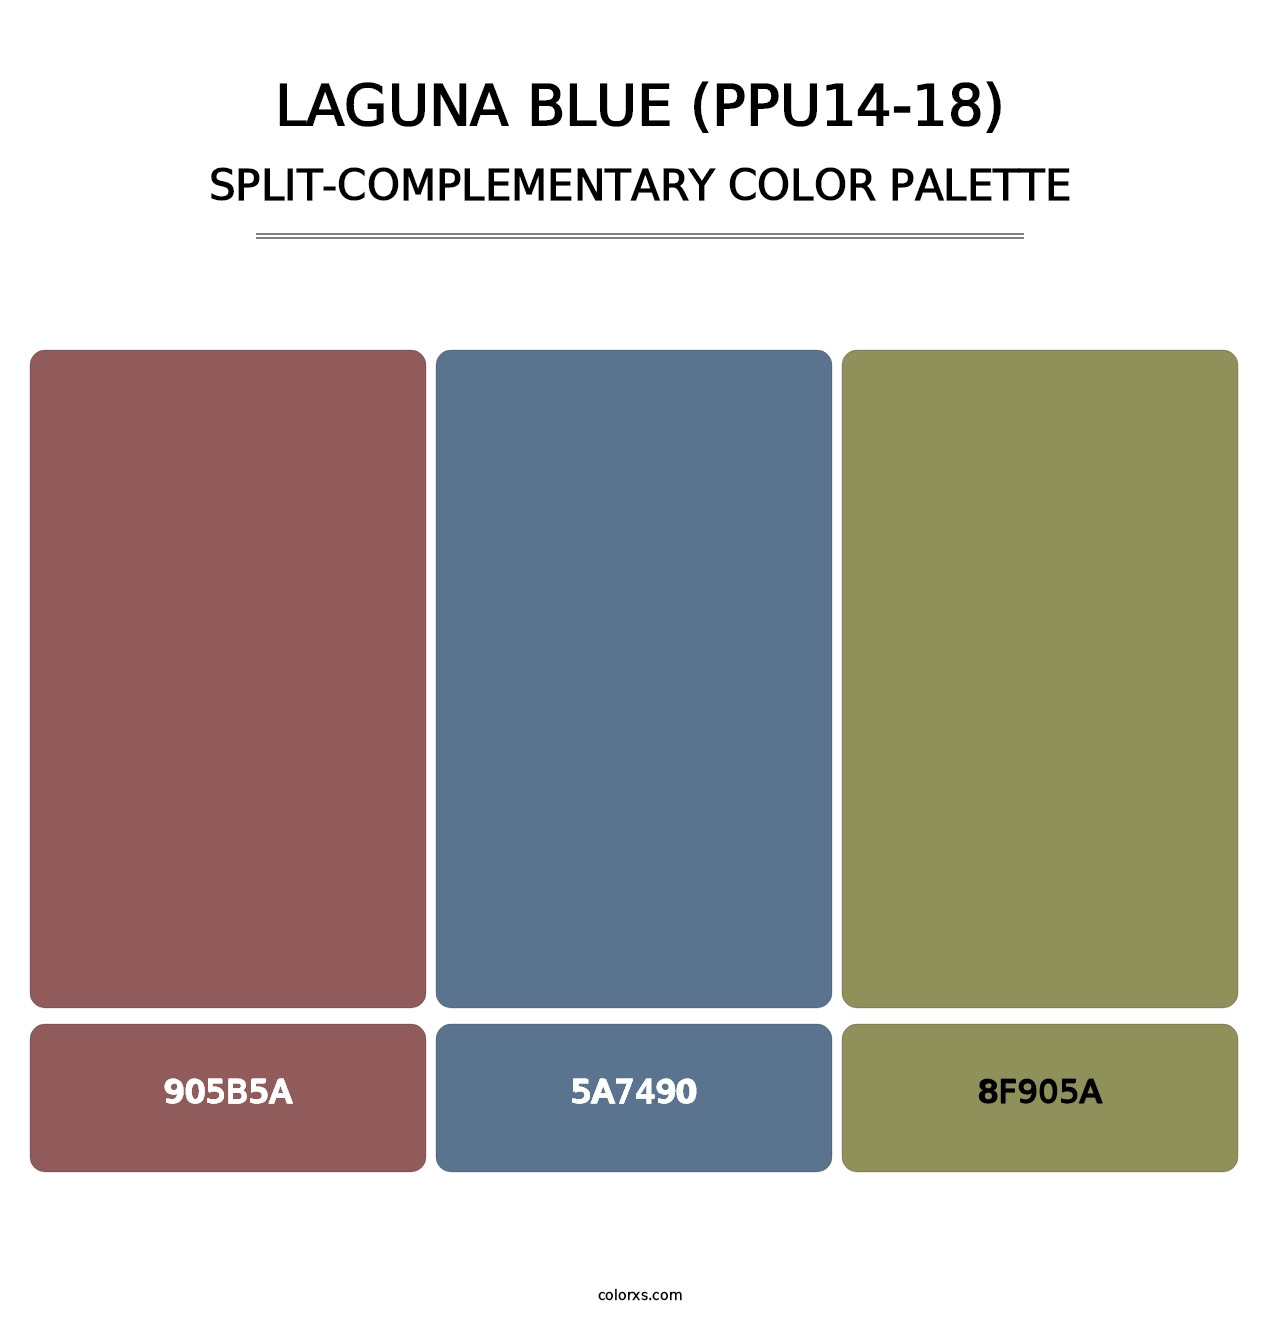 Laguna Blue (PPU14-18) - Split-Complementary Color Palette